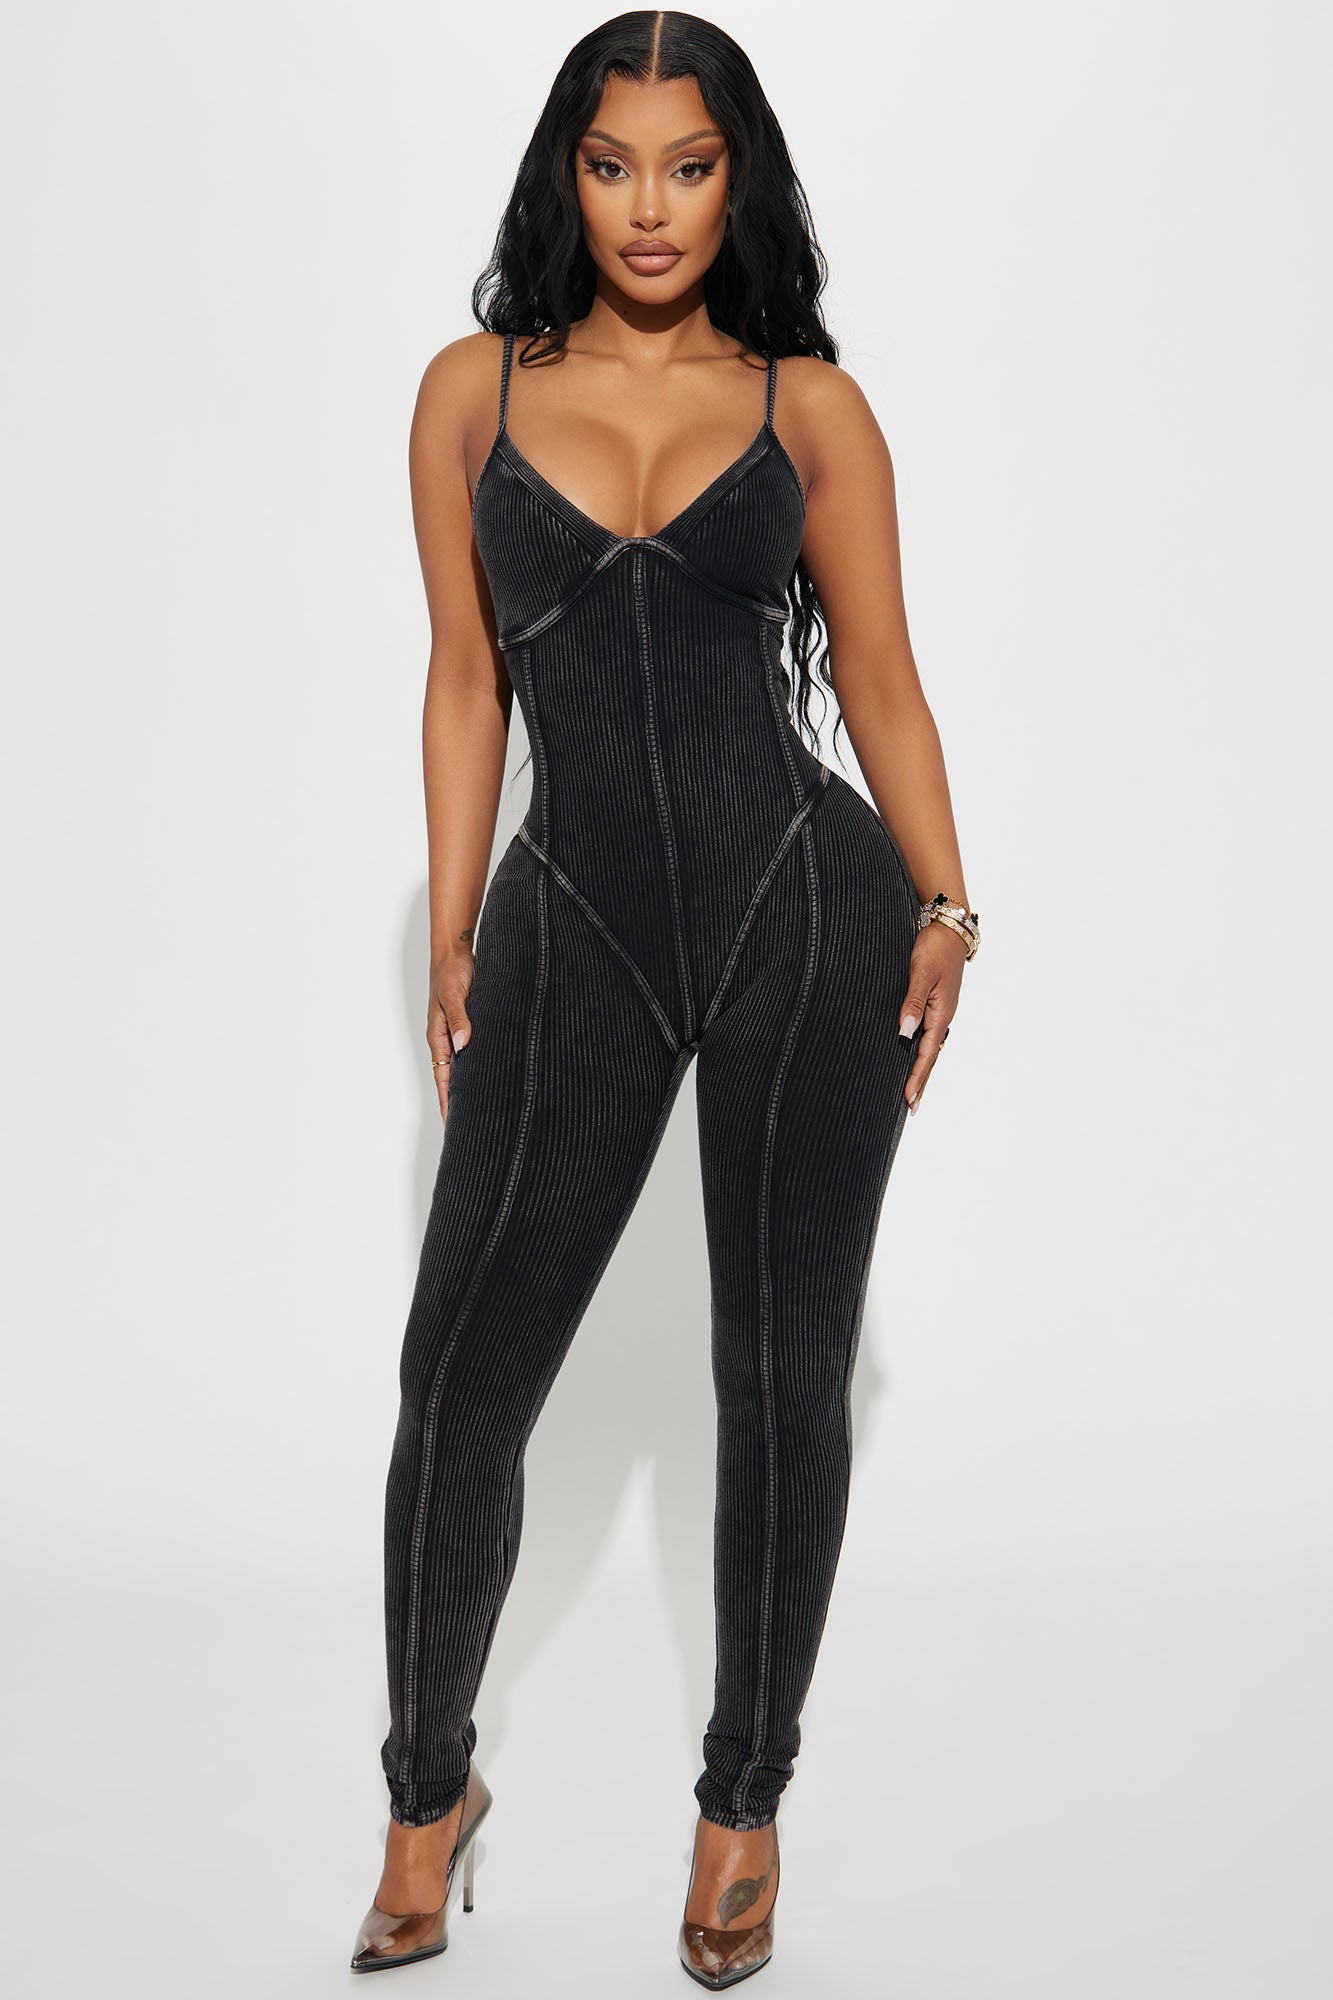 Marianna Mineral Wash Jumpsuit - Black, Fashion Nova, Jumpsuits